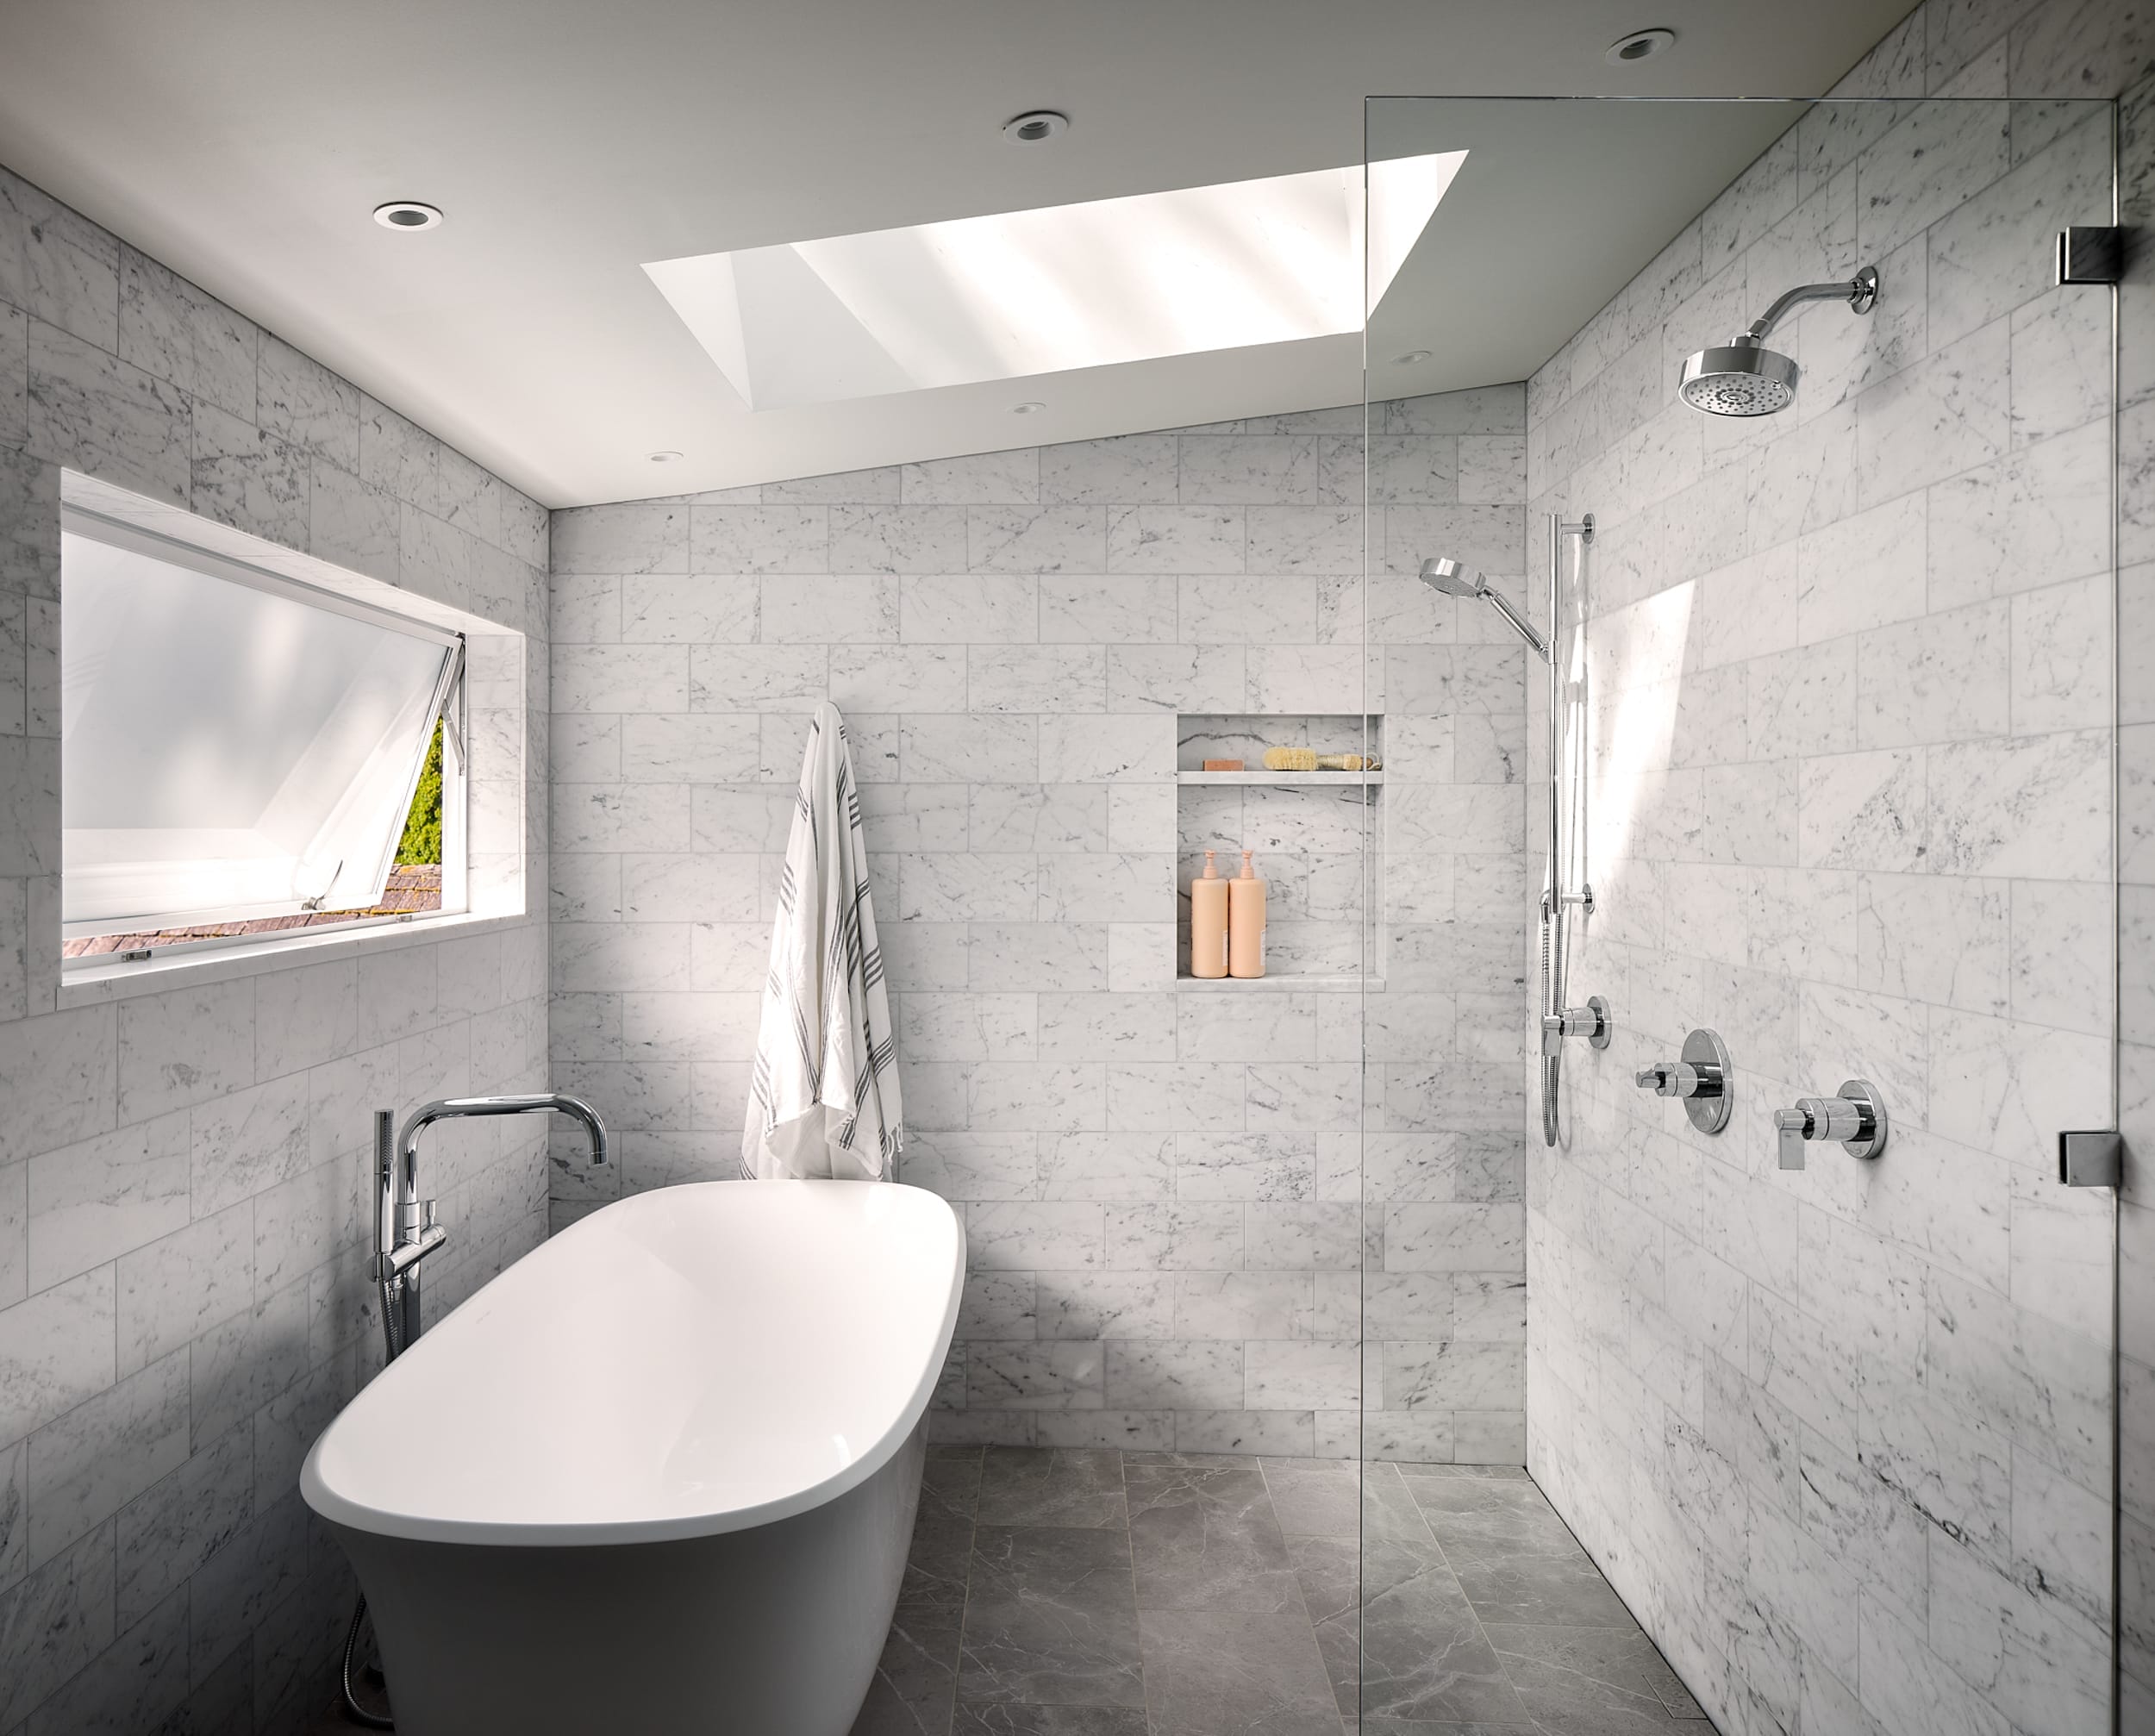 A modern home bathroom with a bathtub and a skylight.